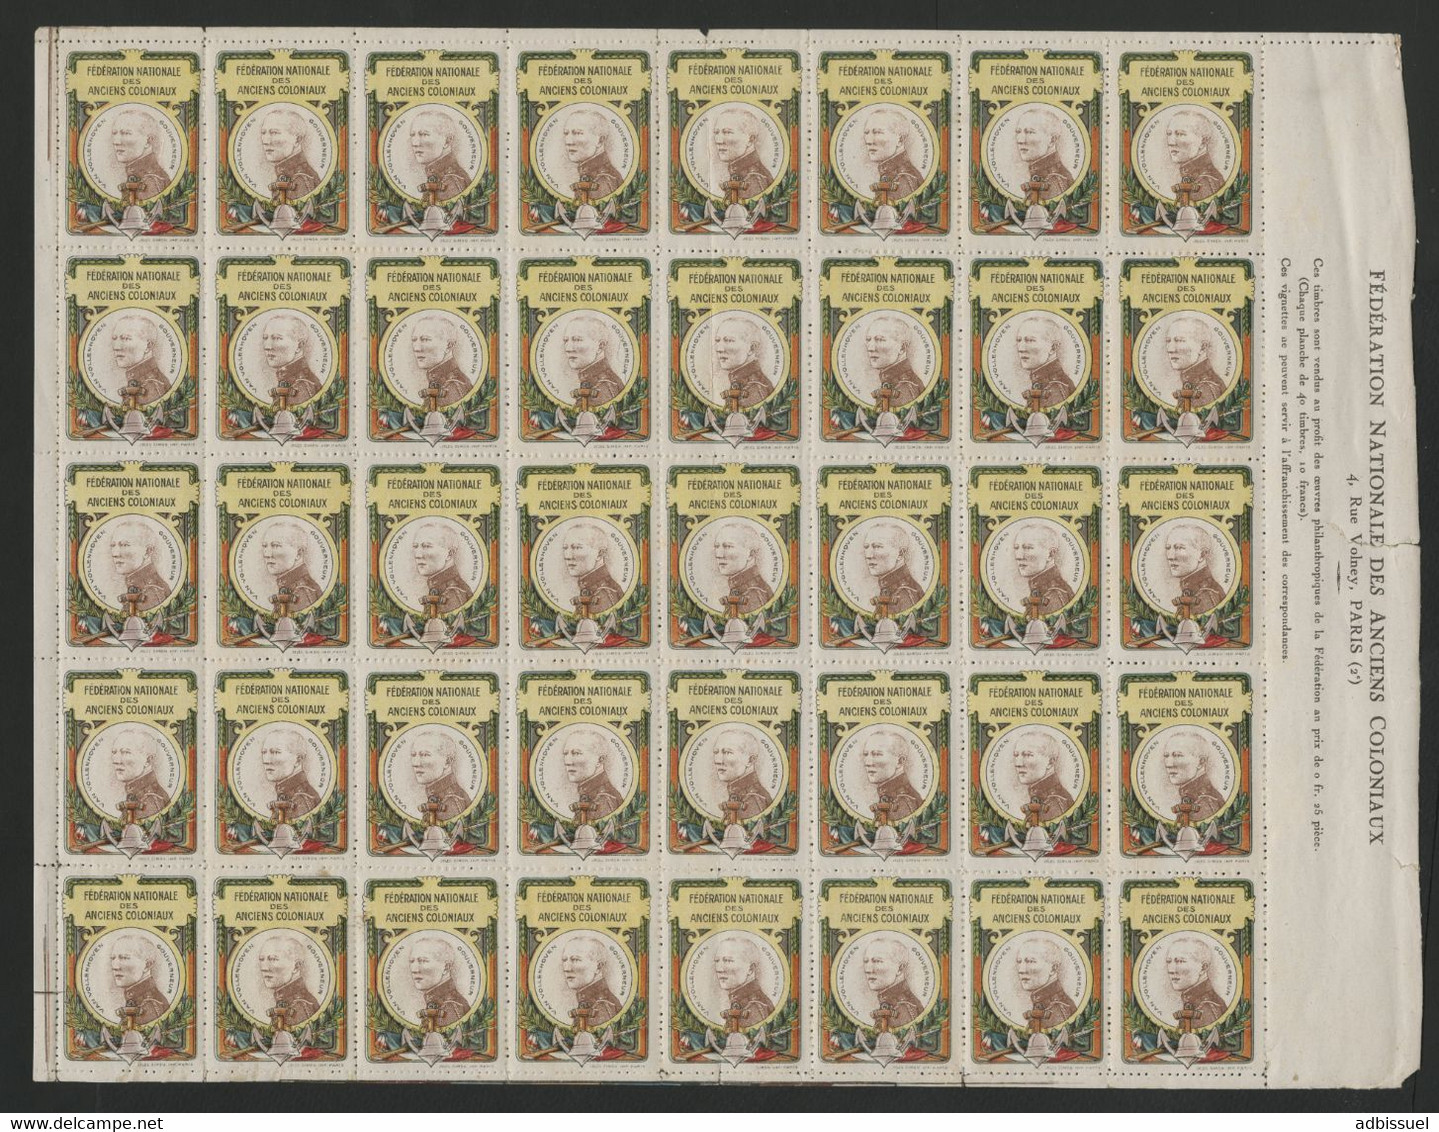 Feuille Complète De 40 Vignettes GOUVERNEUR VAN VOLLENHOVEN FEDERATION NATIONALE DES ANCIENS COLONIAUX Voir Description - Militärmarken